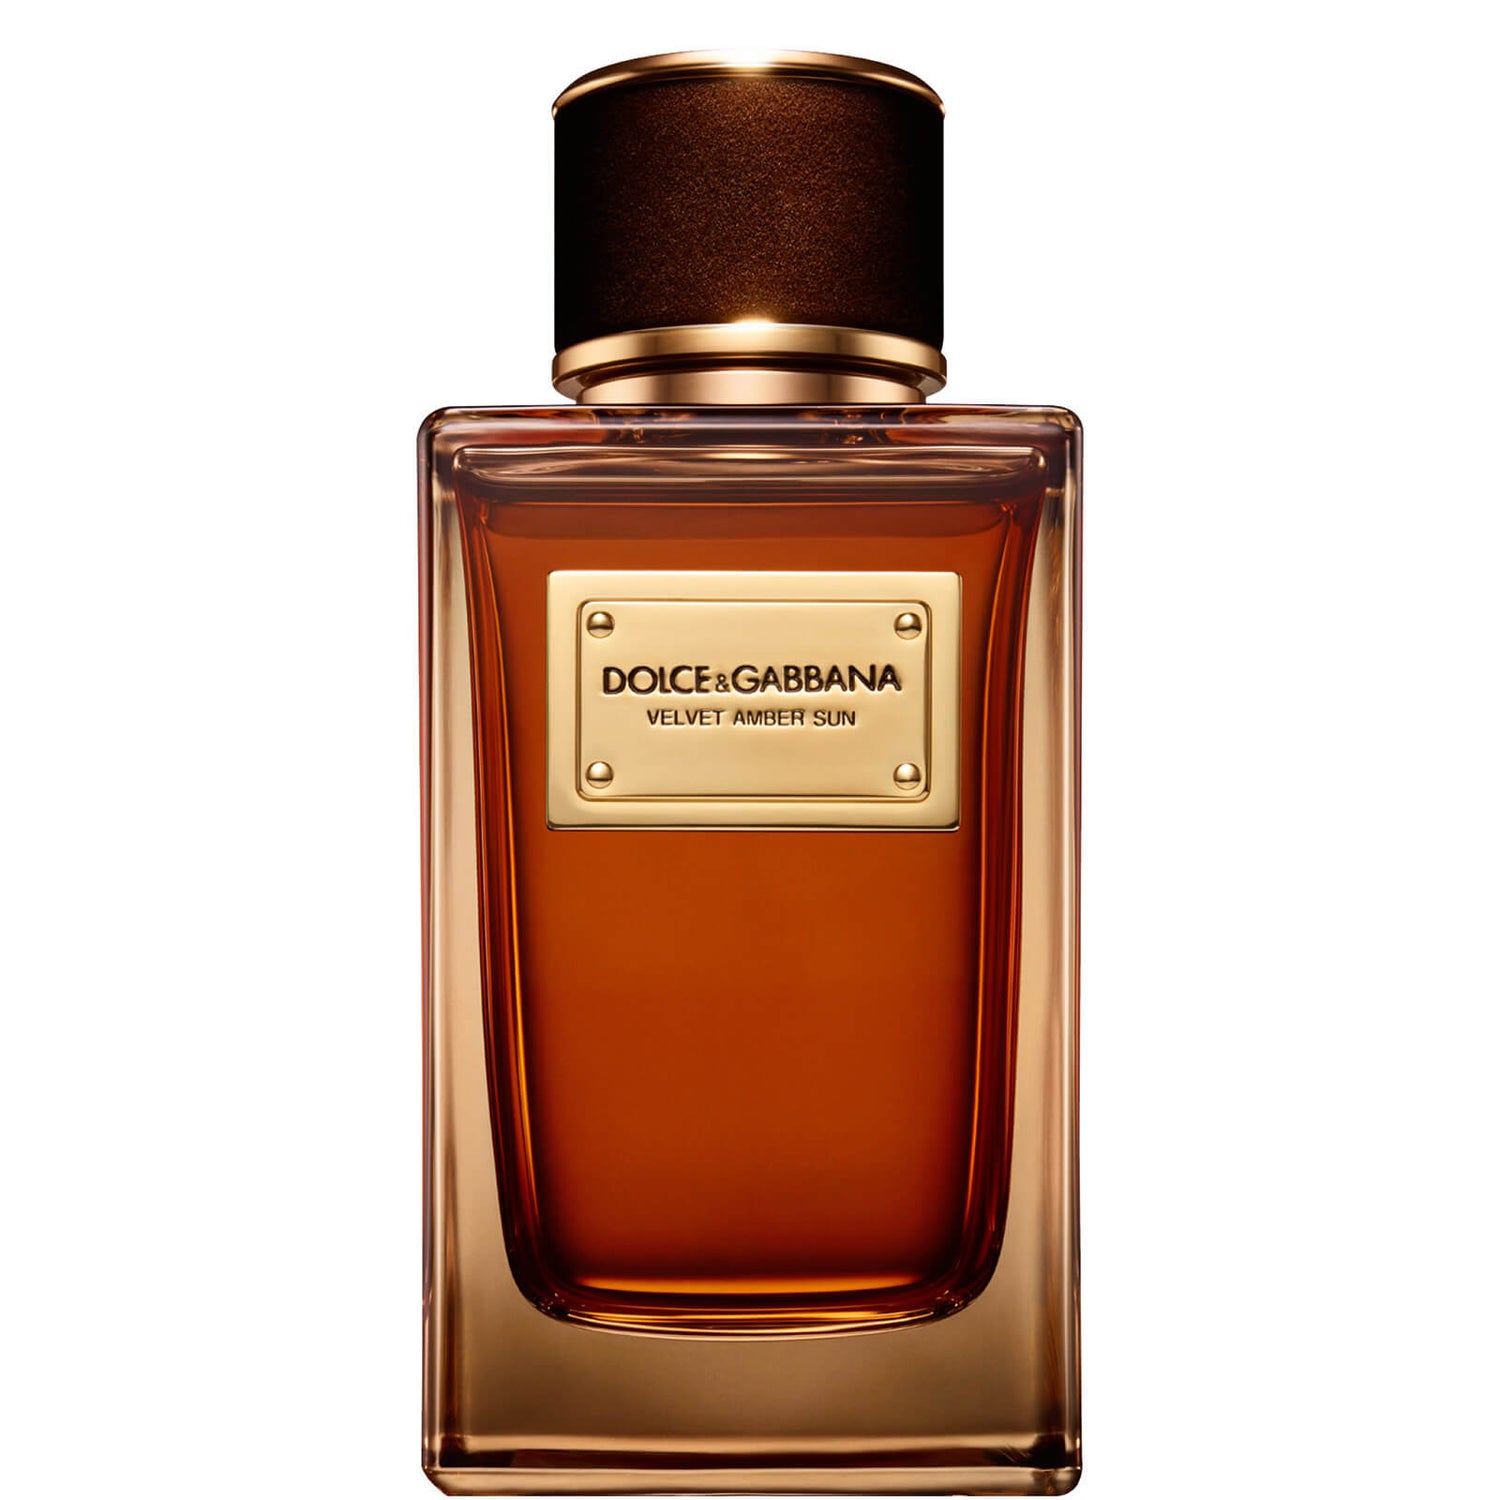 Dolce&Gabbana Velvet Amber Sun Eau de Parfum - 150 ml